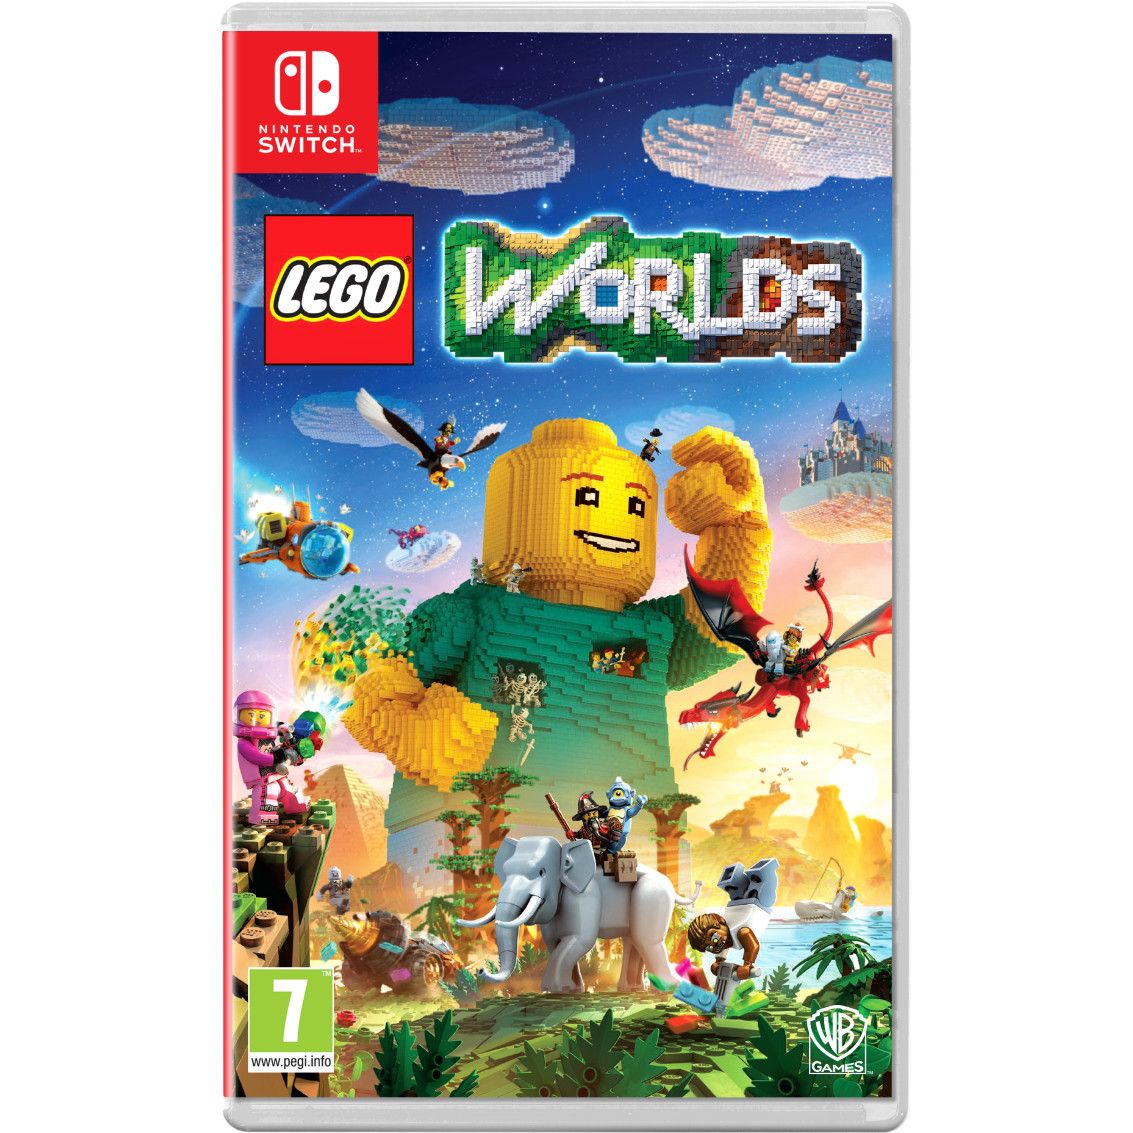 Køb LEGO (DK/UK) - Nintendo - Engelsk Standard - Fri fragt